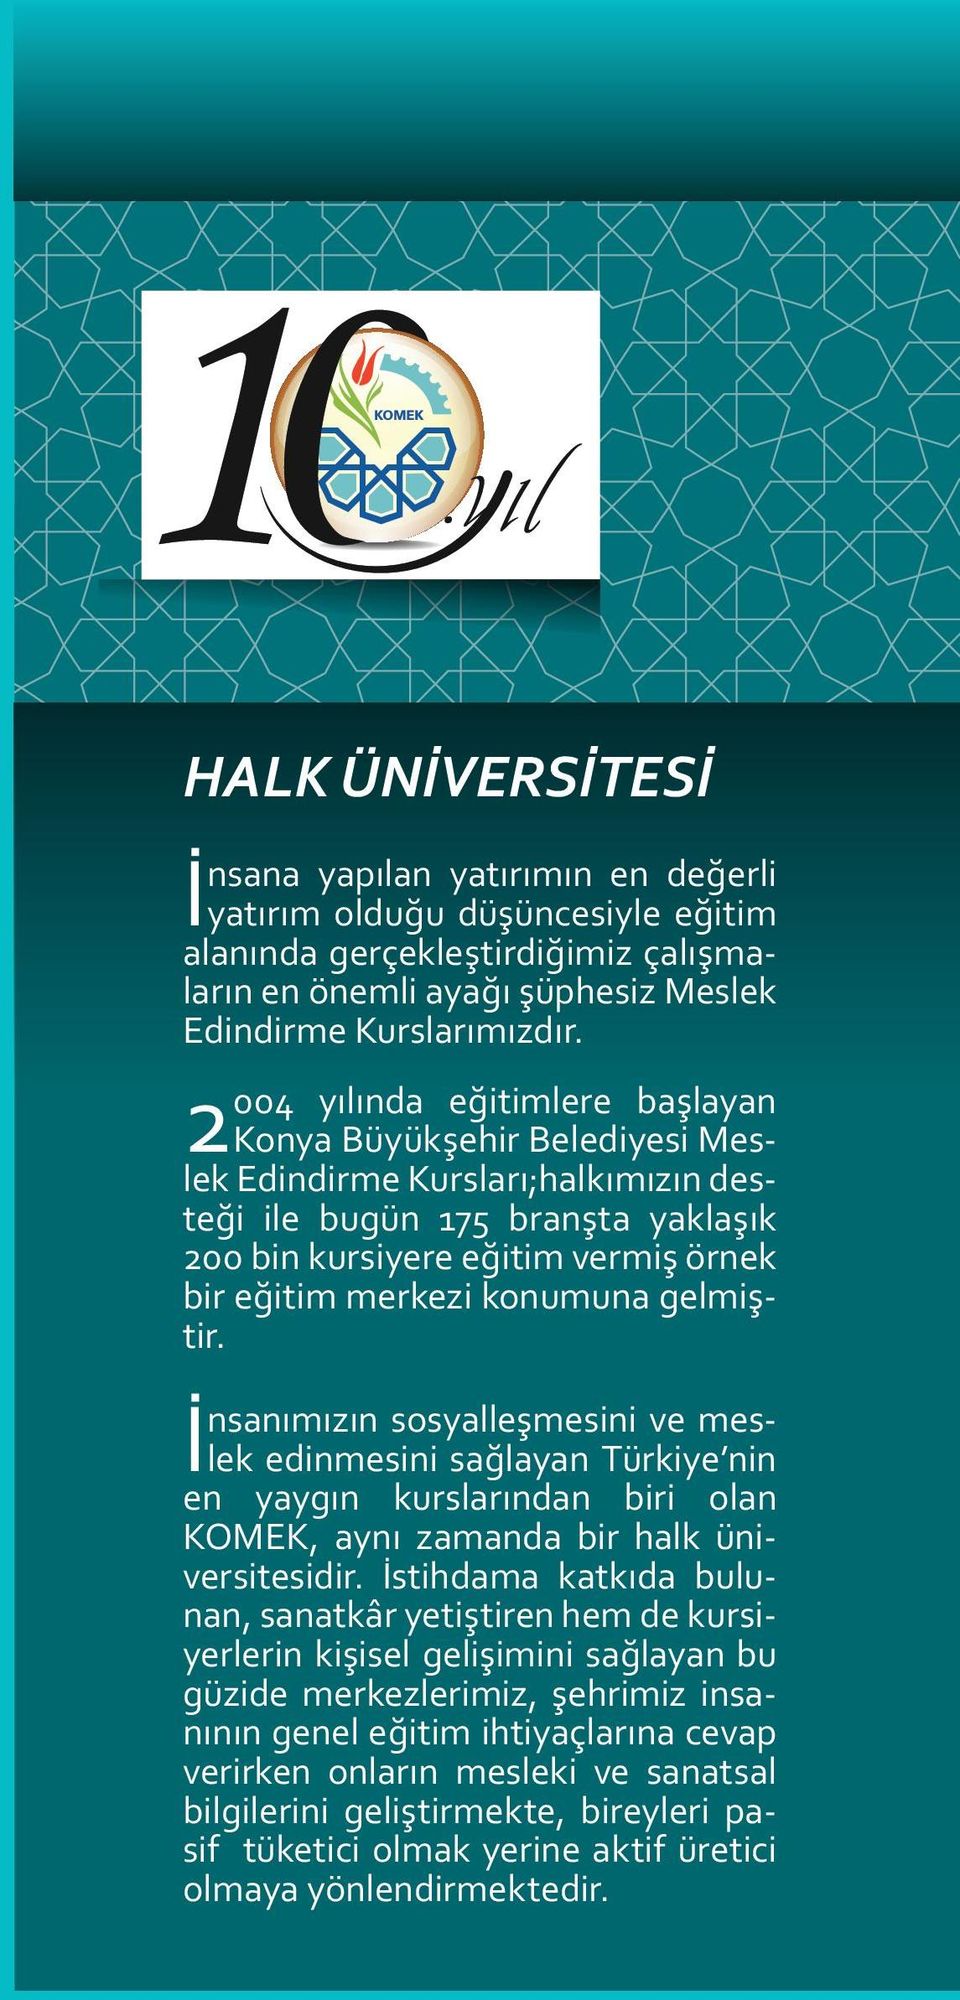 konumuna gelmiştir. İnsanımızın sosyalleşmesini ve meslek edinmesini sağlayan Türkiye nin en yayg ı n k u r slar ı n dan bir i o lan KOMEK, aynı zamanda bir halk üniversitesidir.